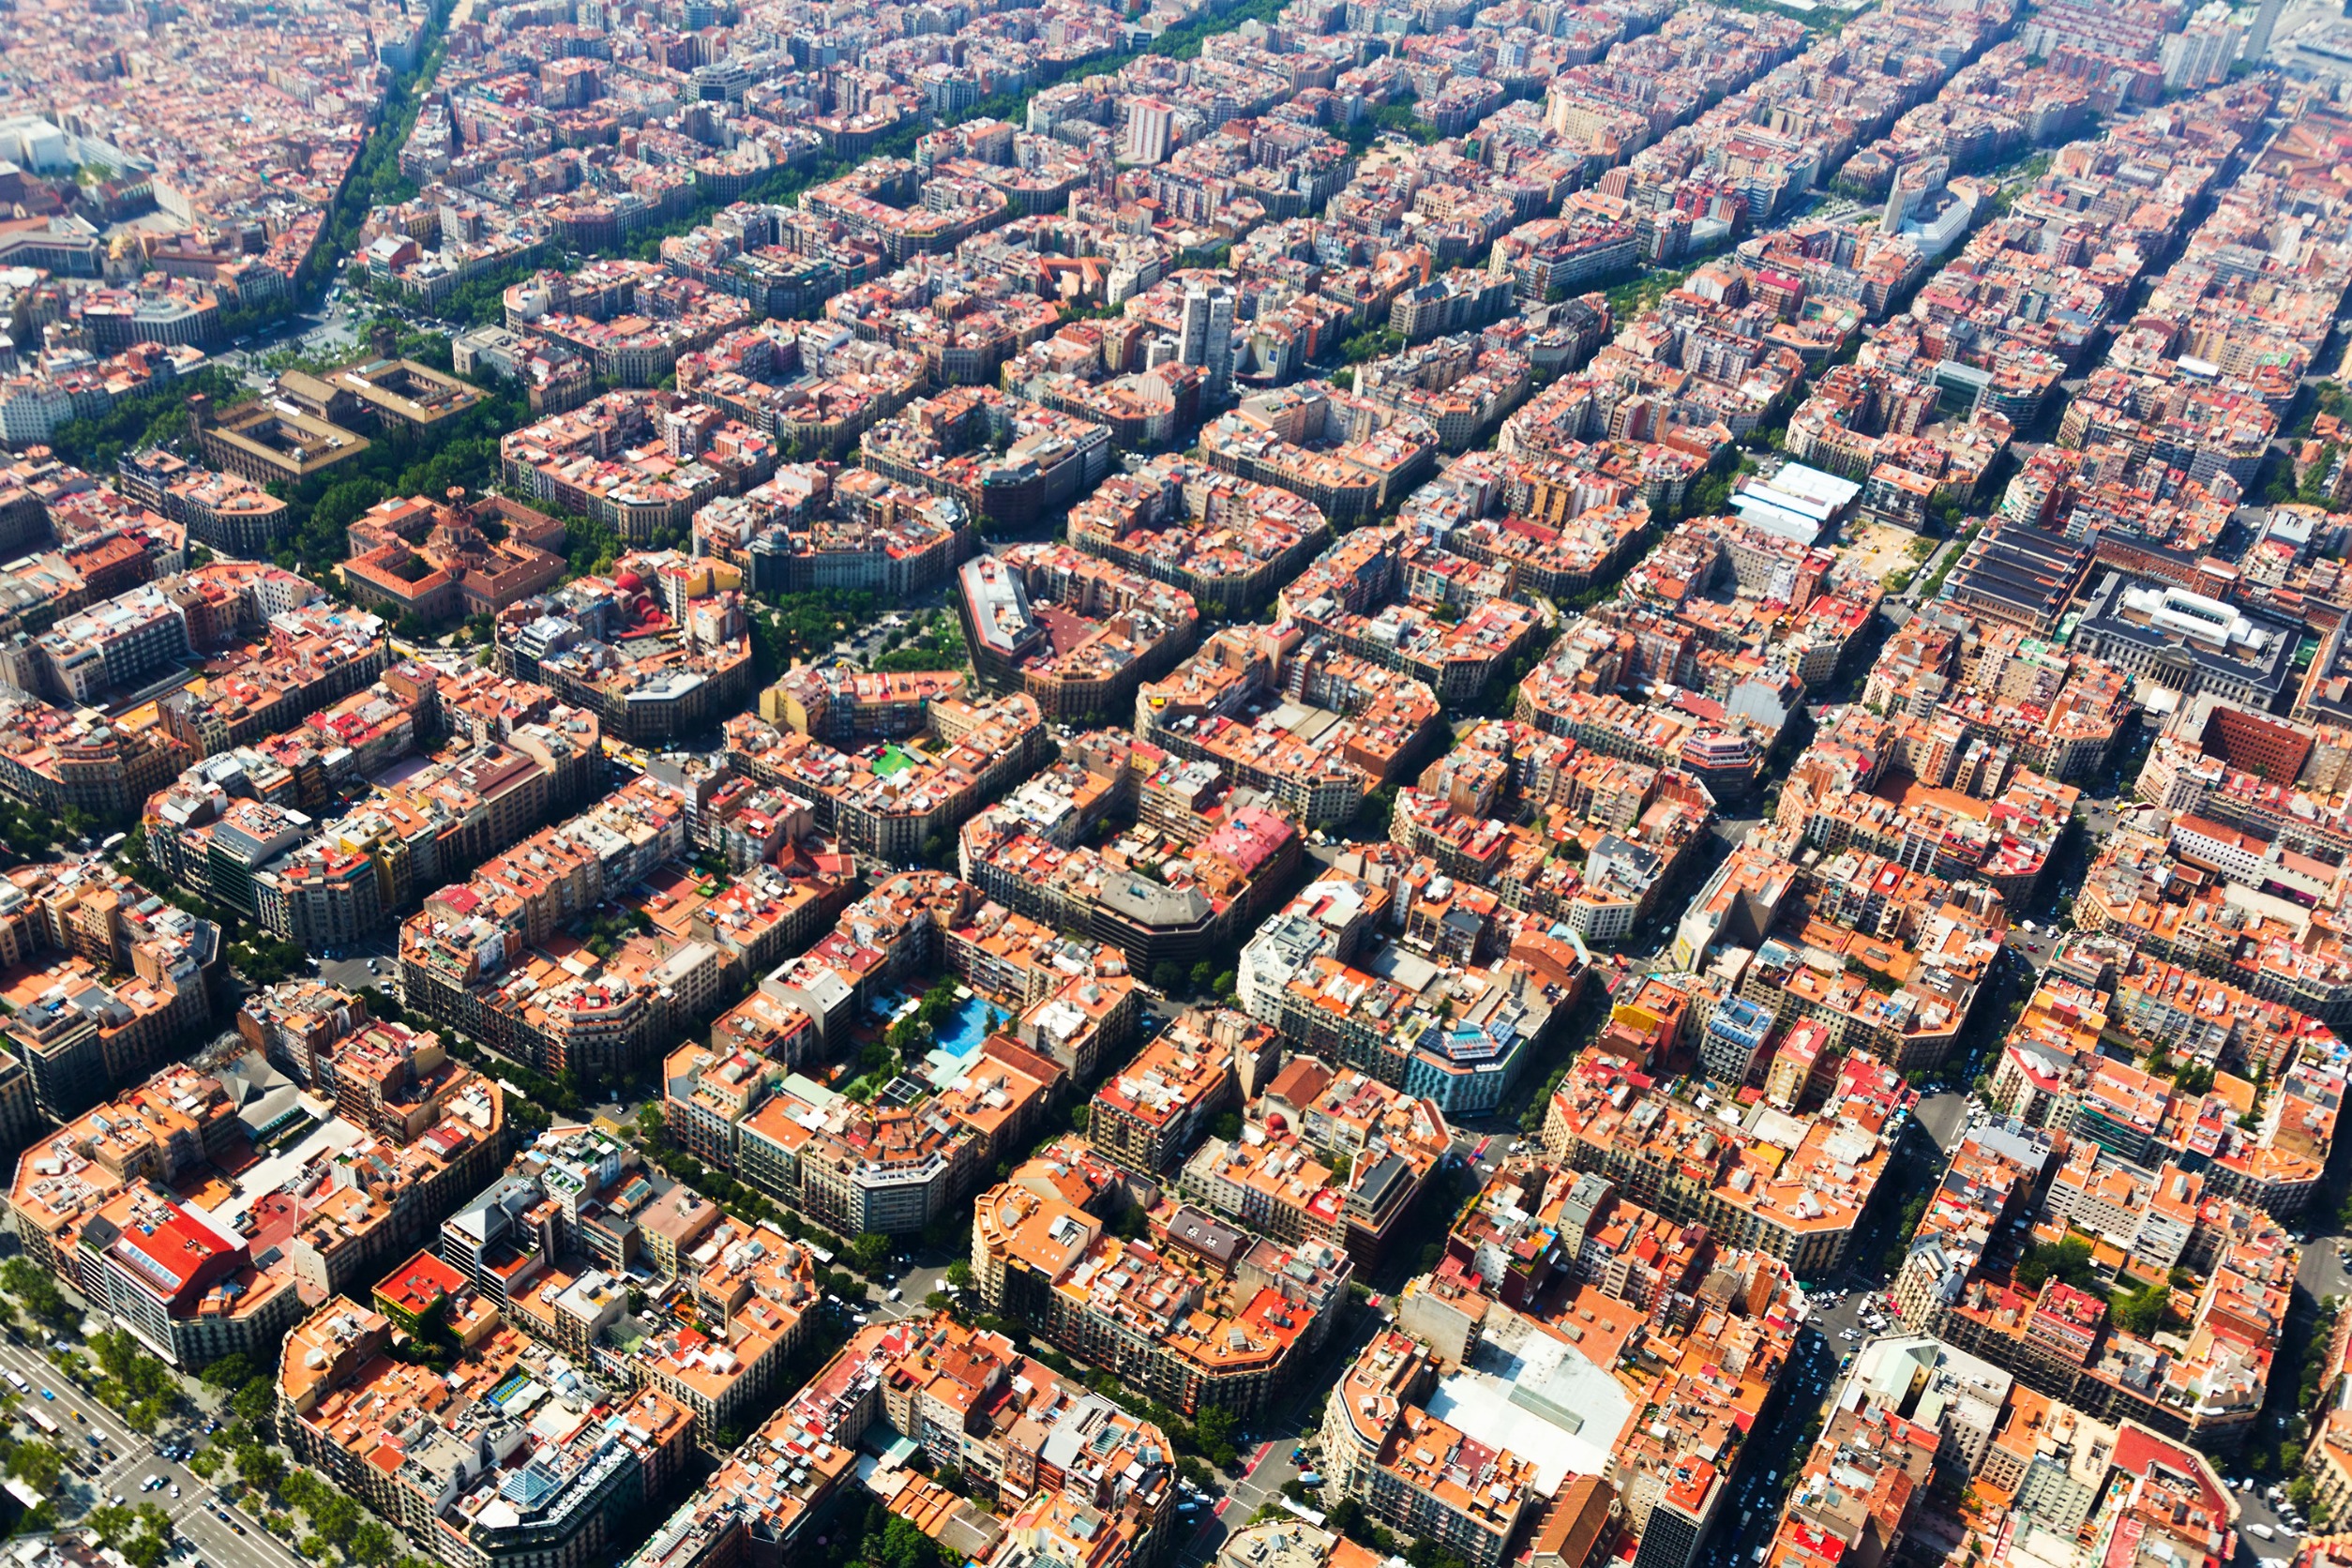 Aportaciones del modernismo catalán al desarrollo arquitectónico de Barcelona